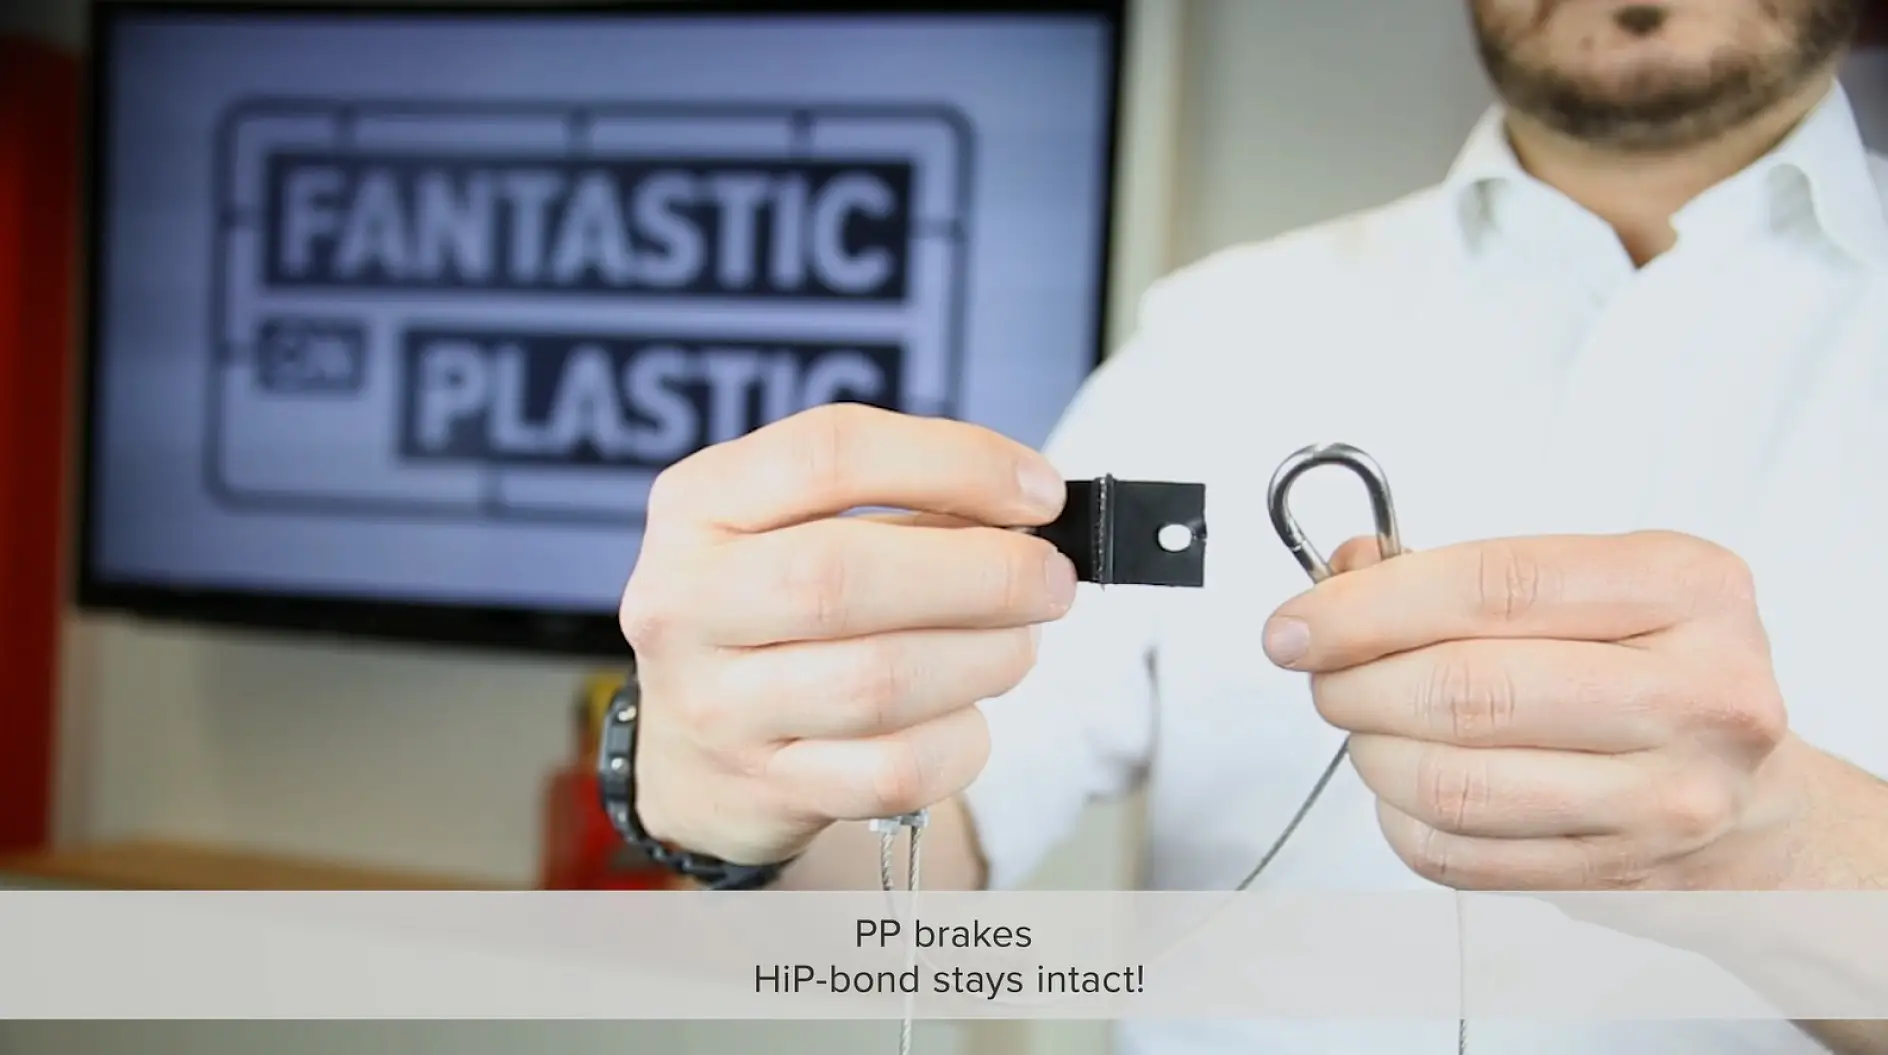 HiP outperforms plastic